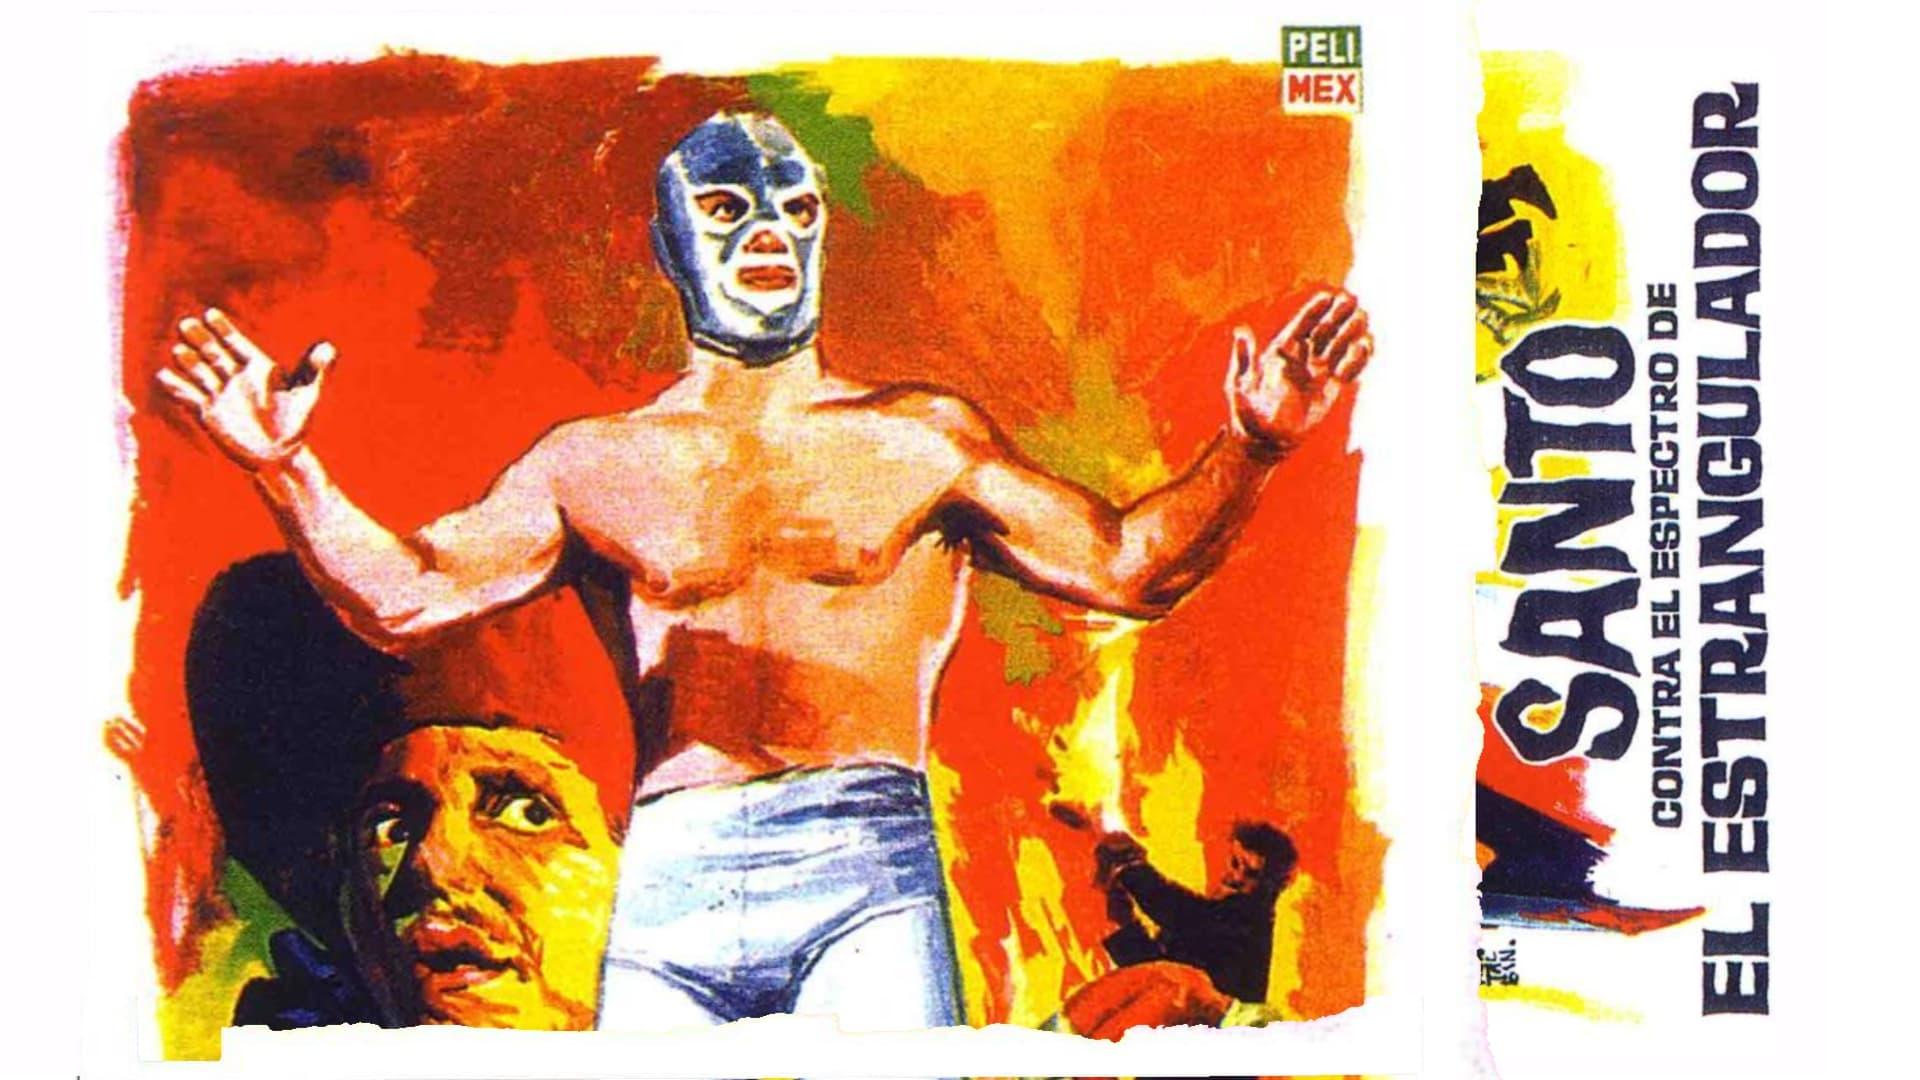 Santo vs. the Ghost of the Strangler backdrop